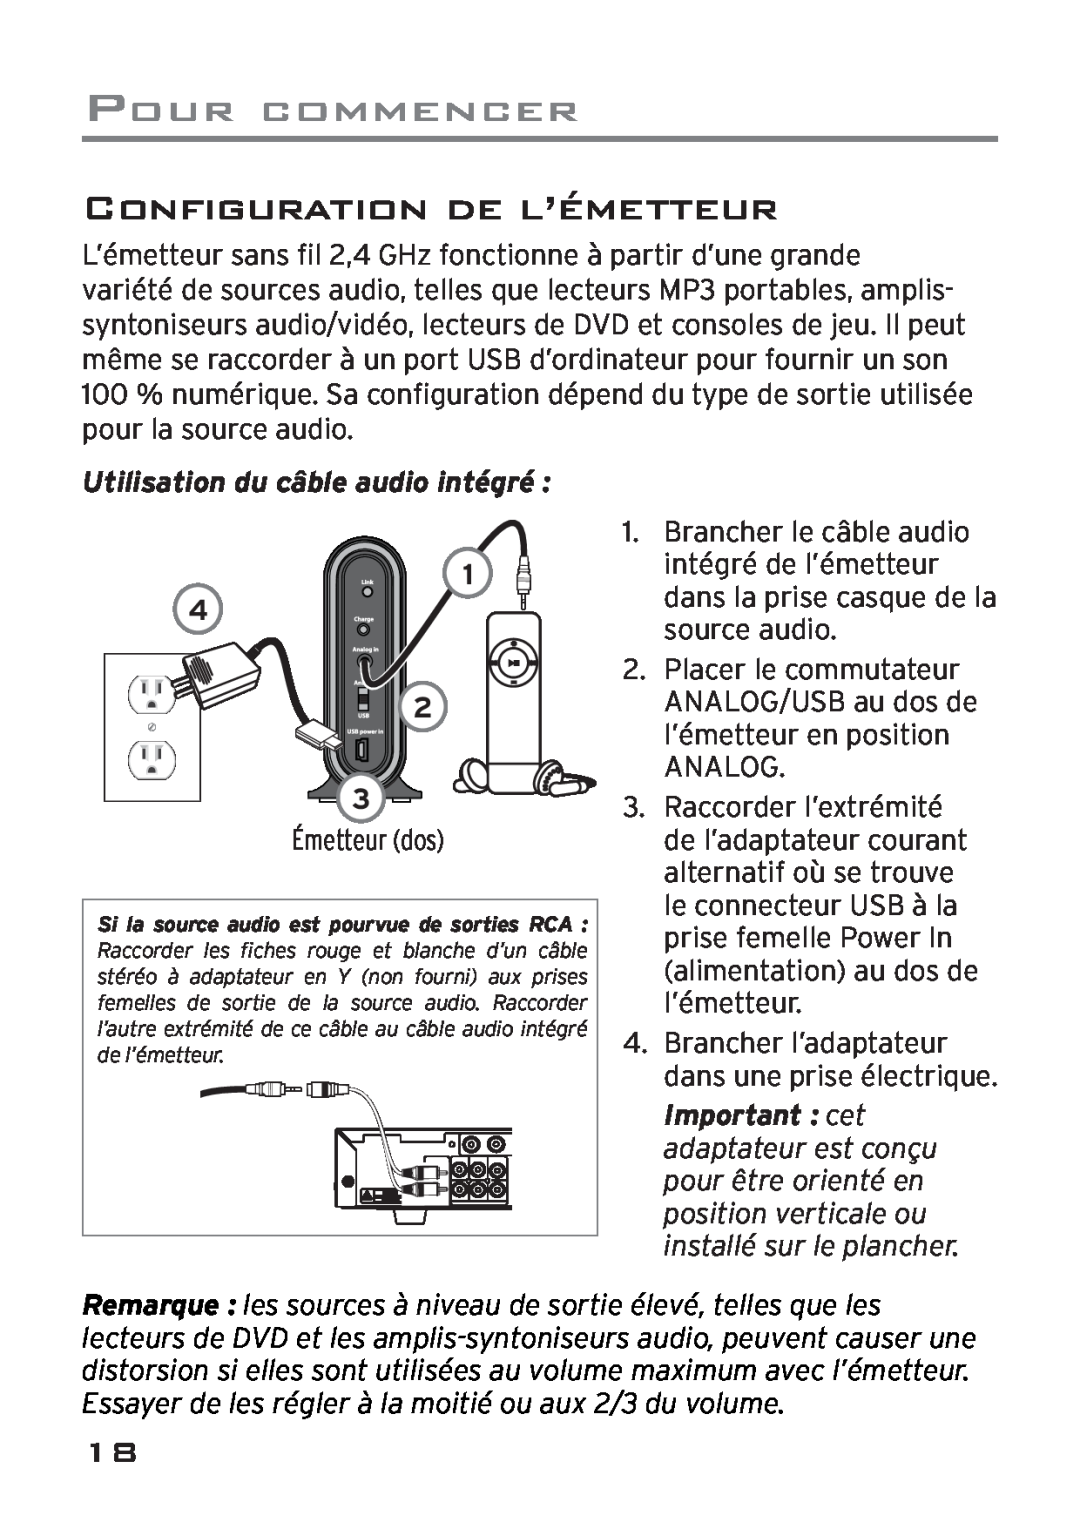 Acoustic Research AWD205 owner manual Configuration De L’Émetteur, Utilisation du câble audio intégré, Pour Commencer 